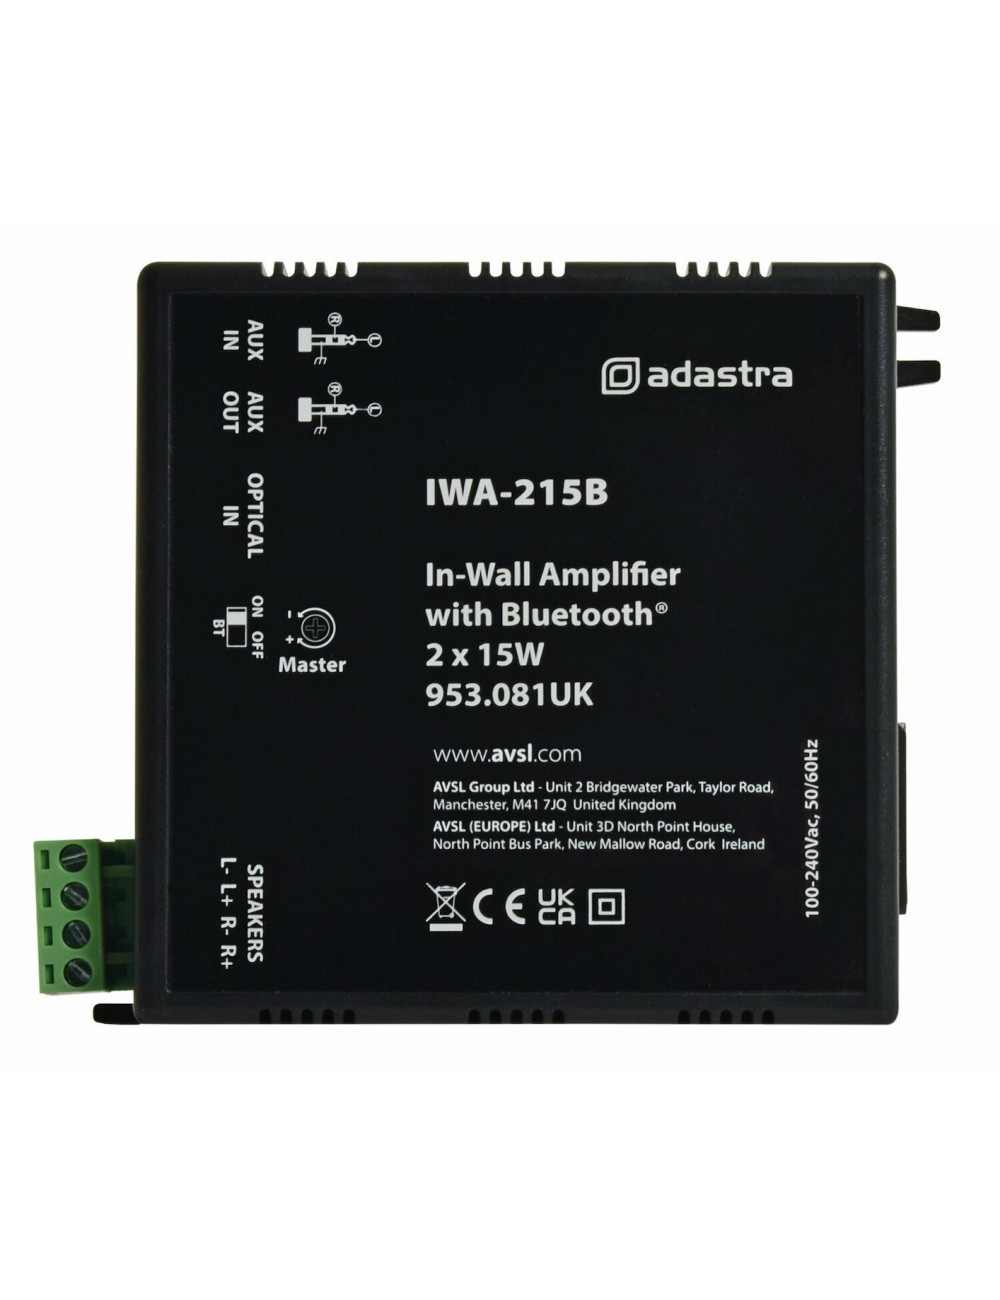 Wall Amplifier with Bluetooth Adastra IWA-215B - 2